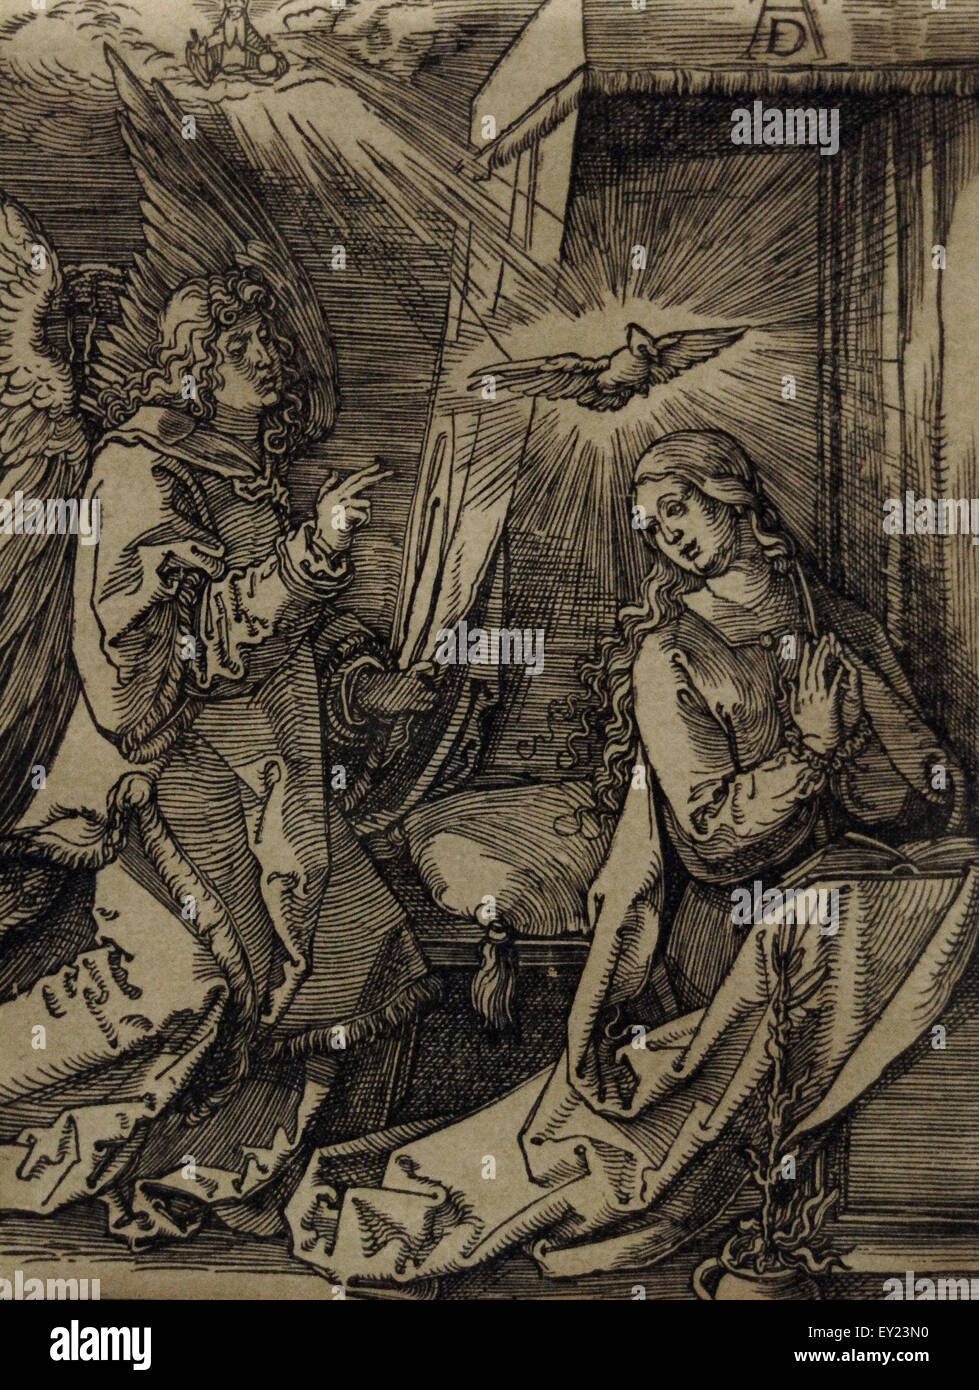 Albrecht Dürer (1471-1528). Deutscher Maler und Kupferstecher. Die Verkündigung aus der kleinen Passion c.1509-1511. Holzschnitt. Dallas Museum of Art. USA. Gravur. Stockfoto